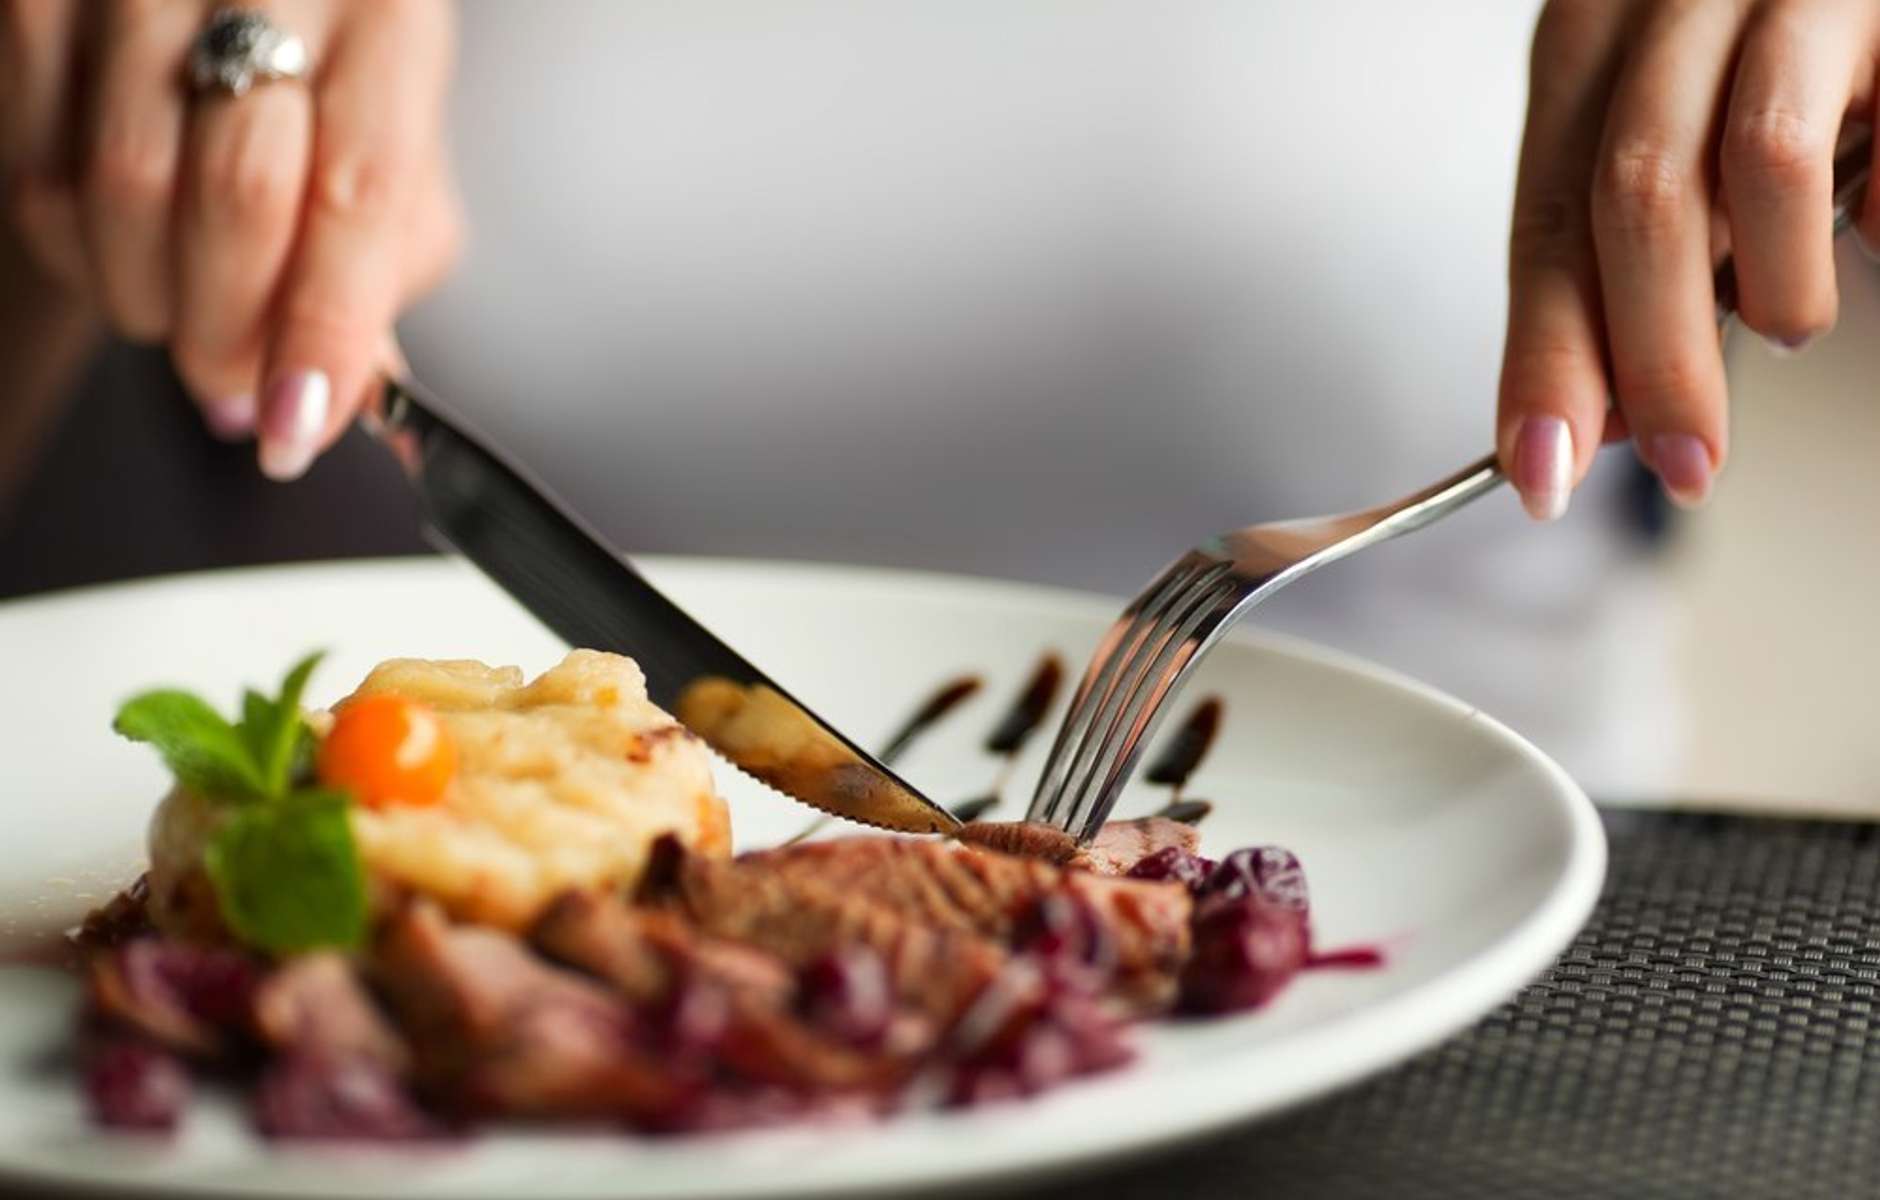 Звук ужина. Еда с вилкой и ножом. Еда в ресторане. Тарелка с едой в руках. Кушать вилкой и ножом.